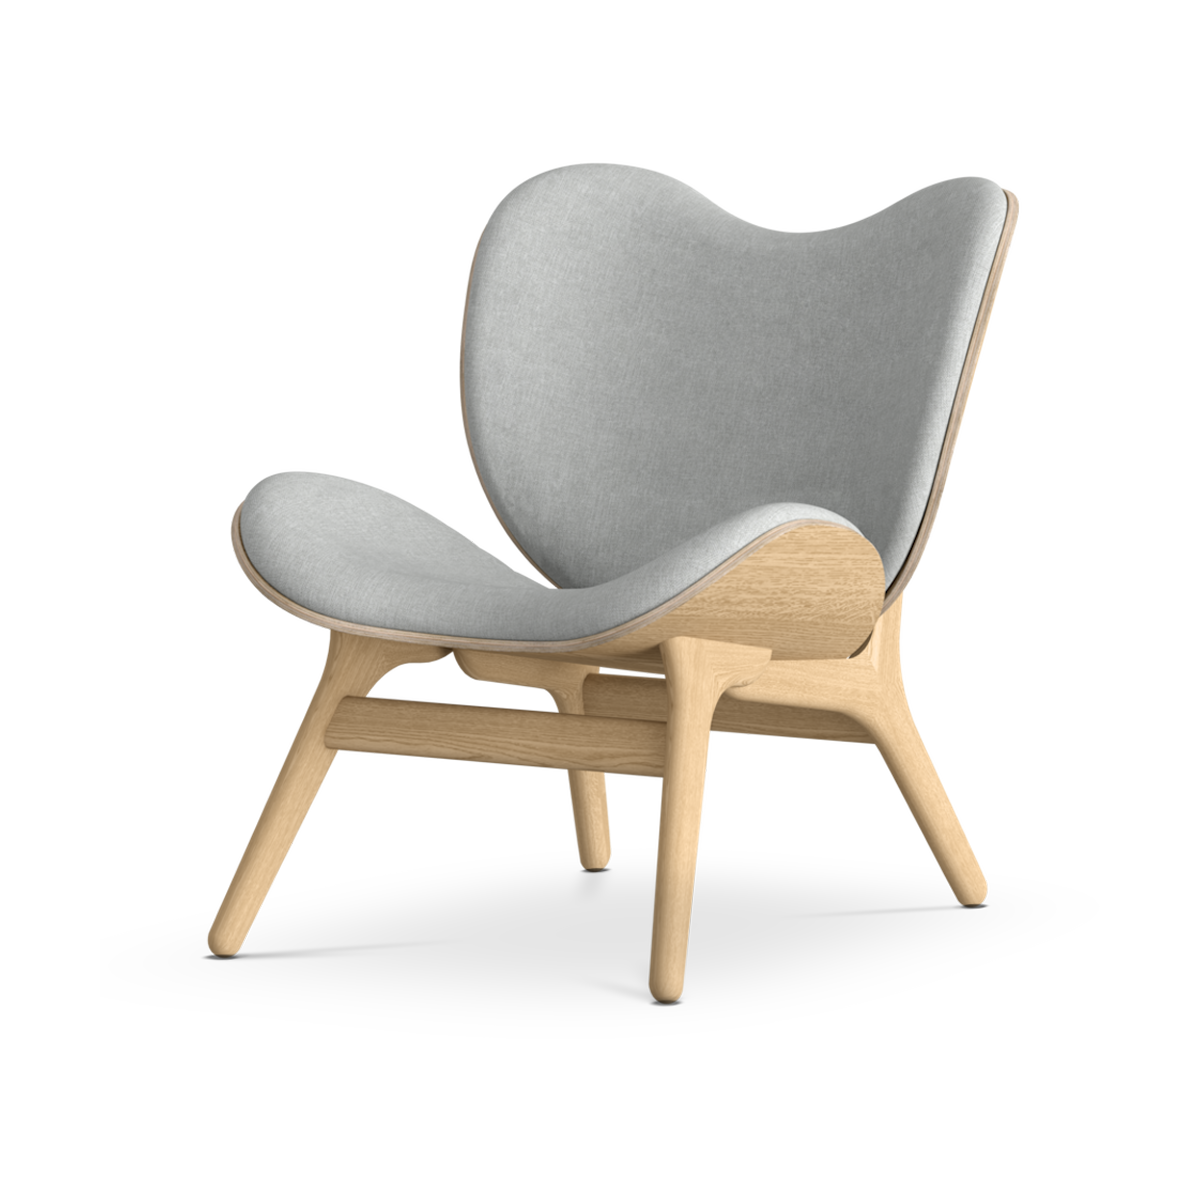 A Conversation Piece naturel houten fauteuil Sterling